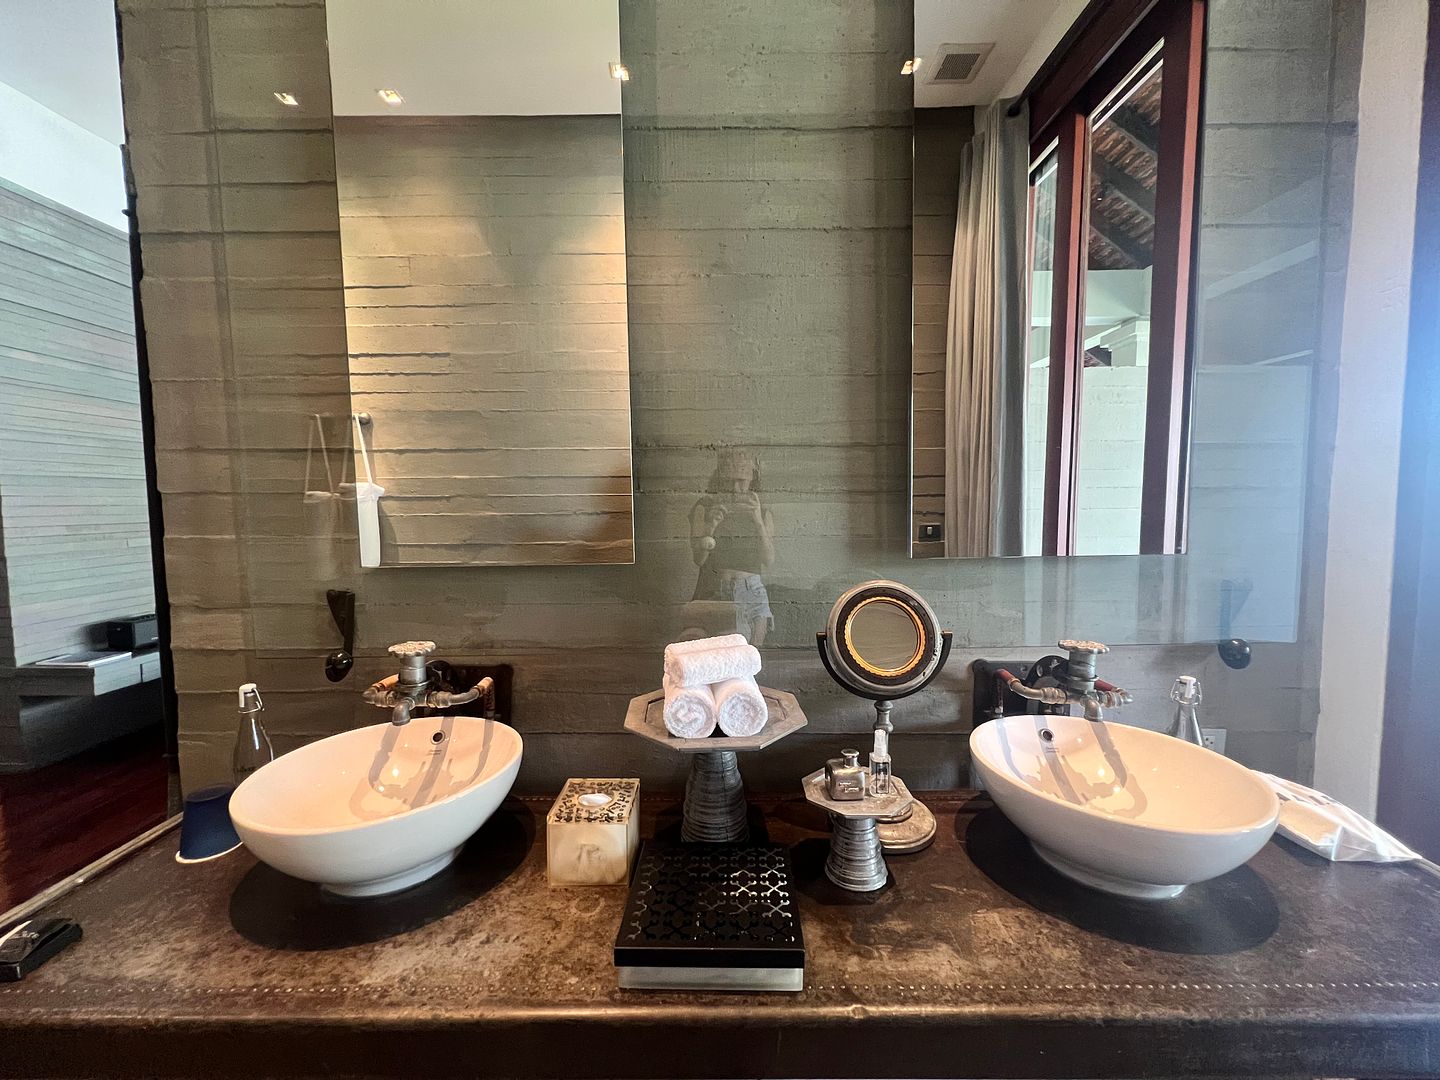 The Slate Phuket bathroom vanity